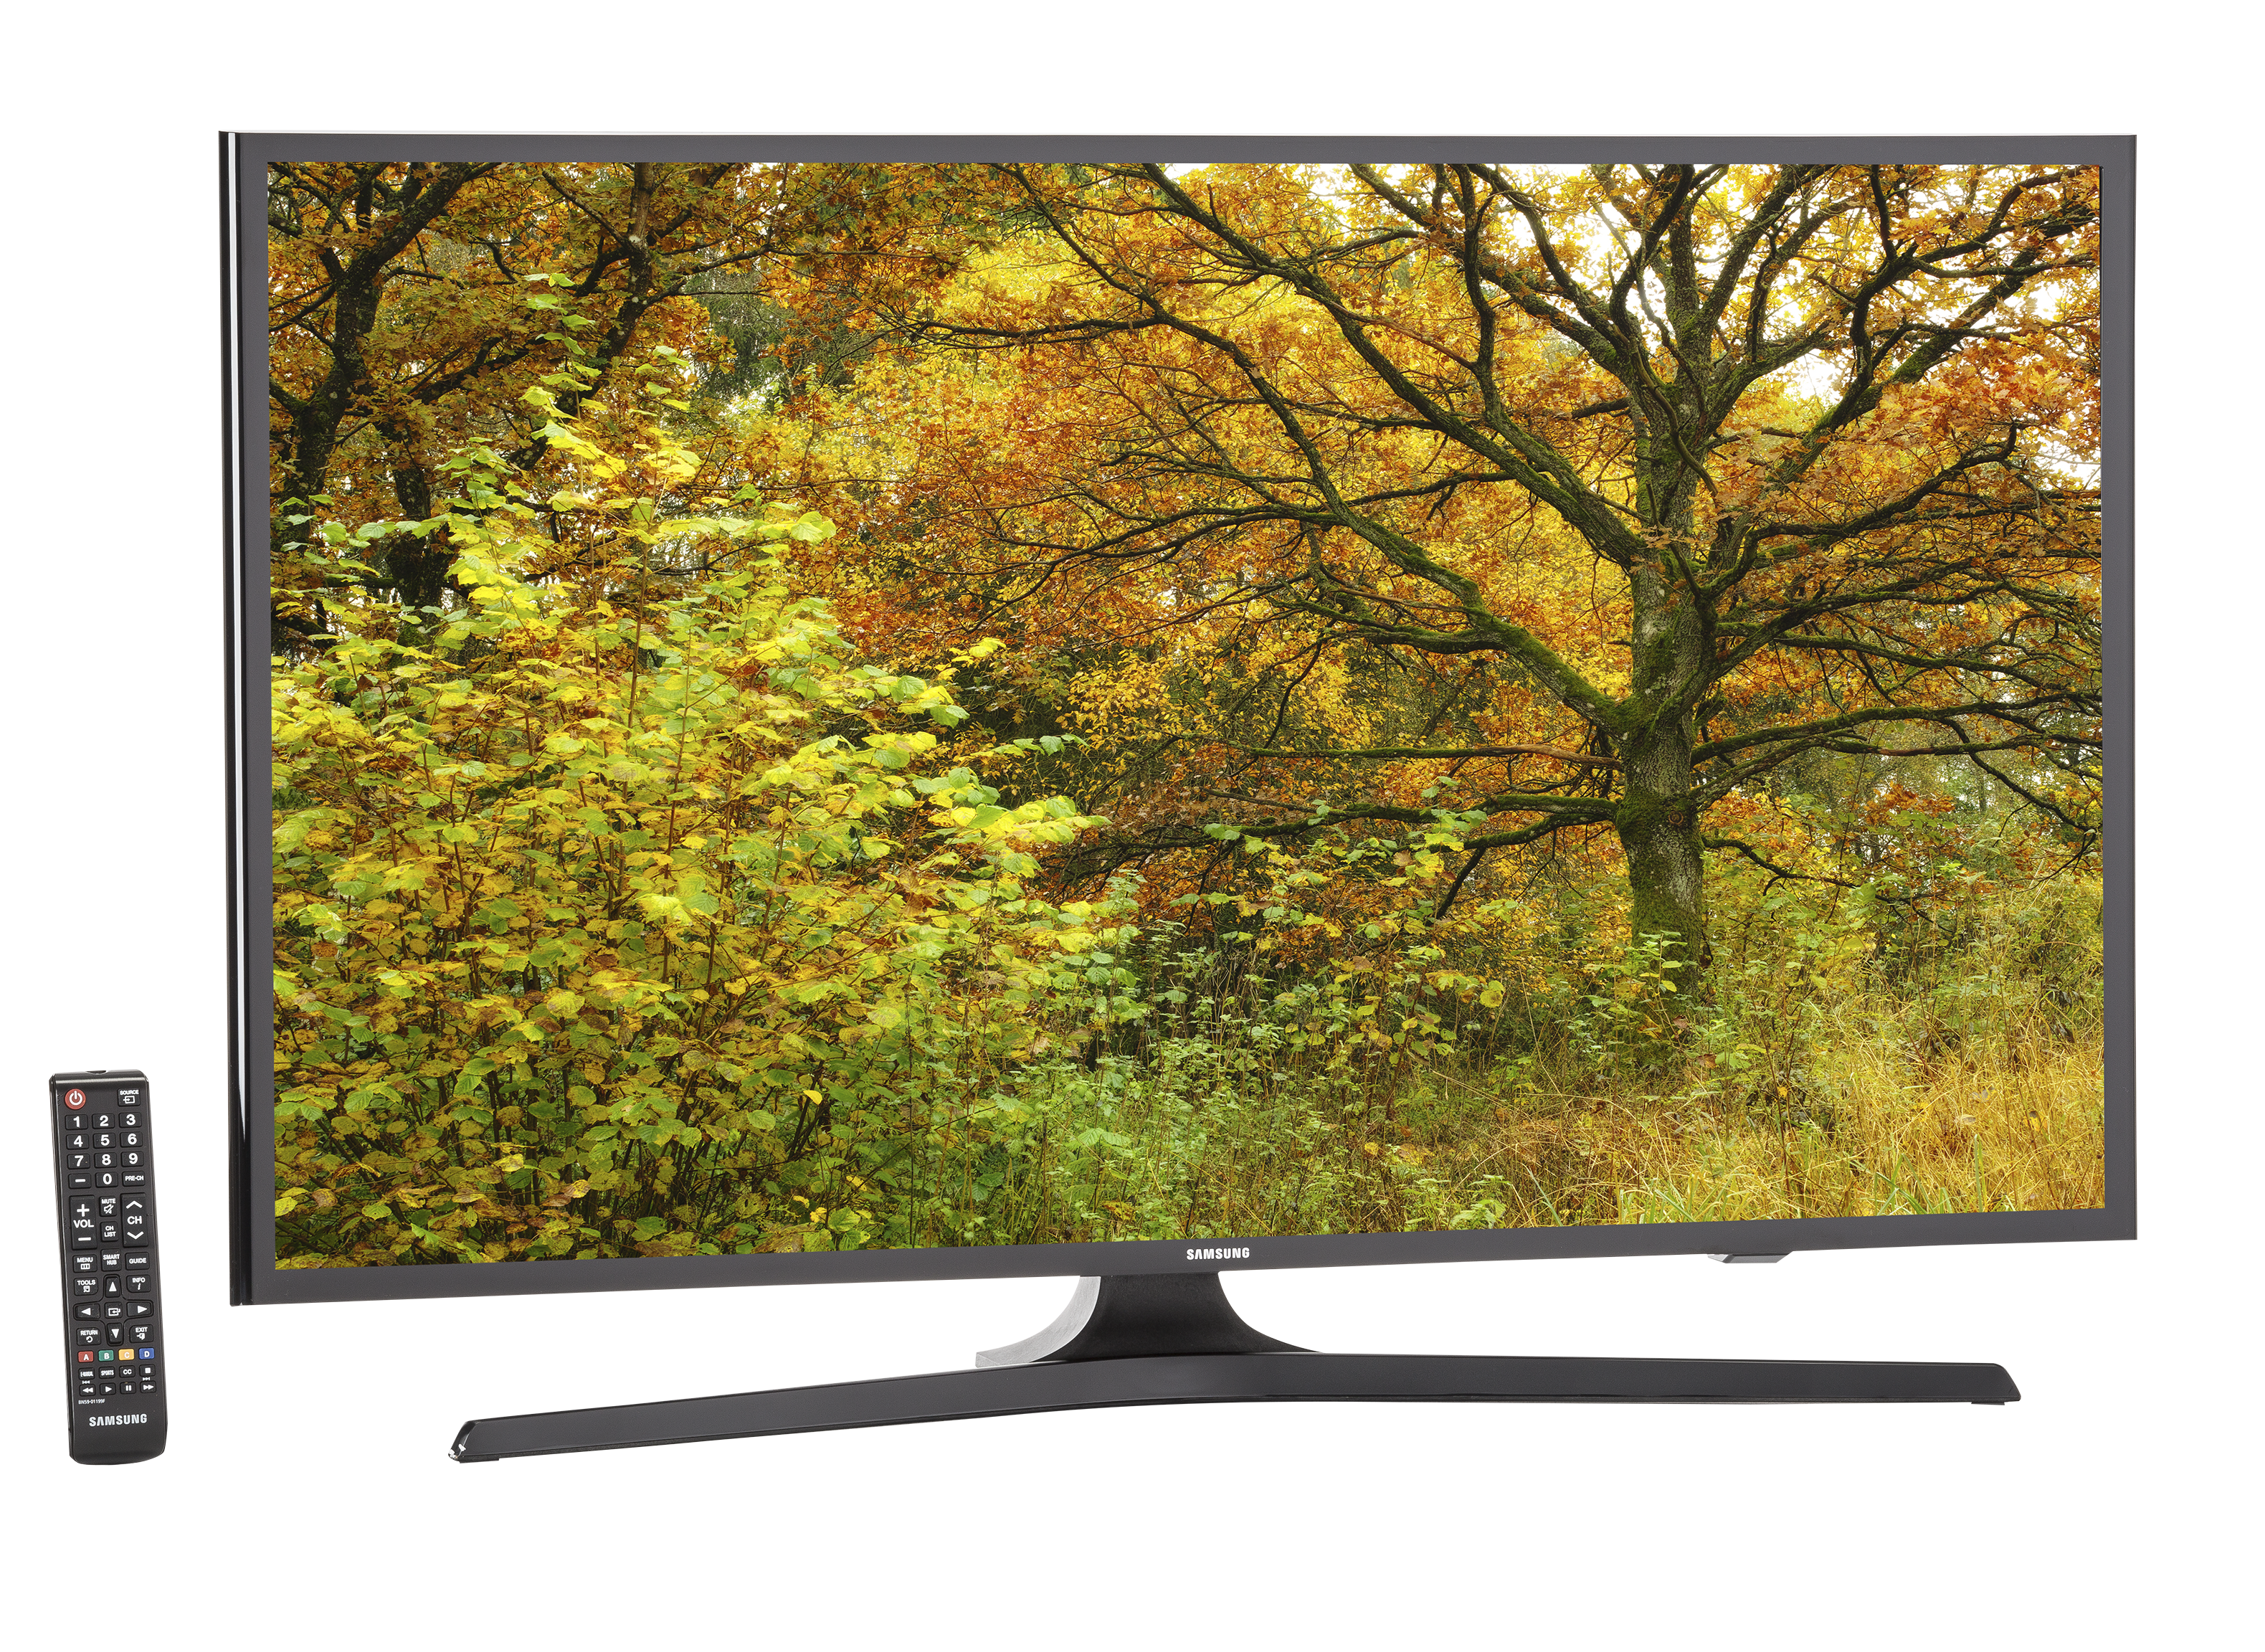 Samsung UN40J520D TV Review - Consumer Reports